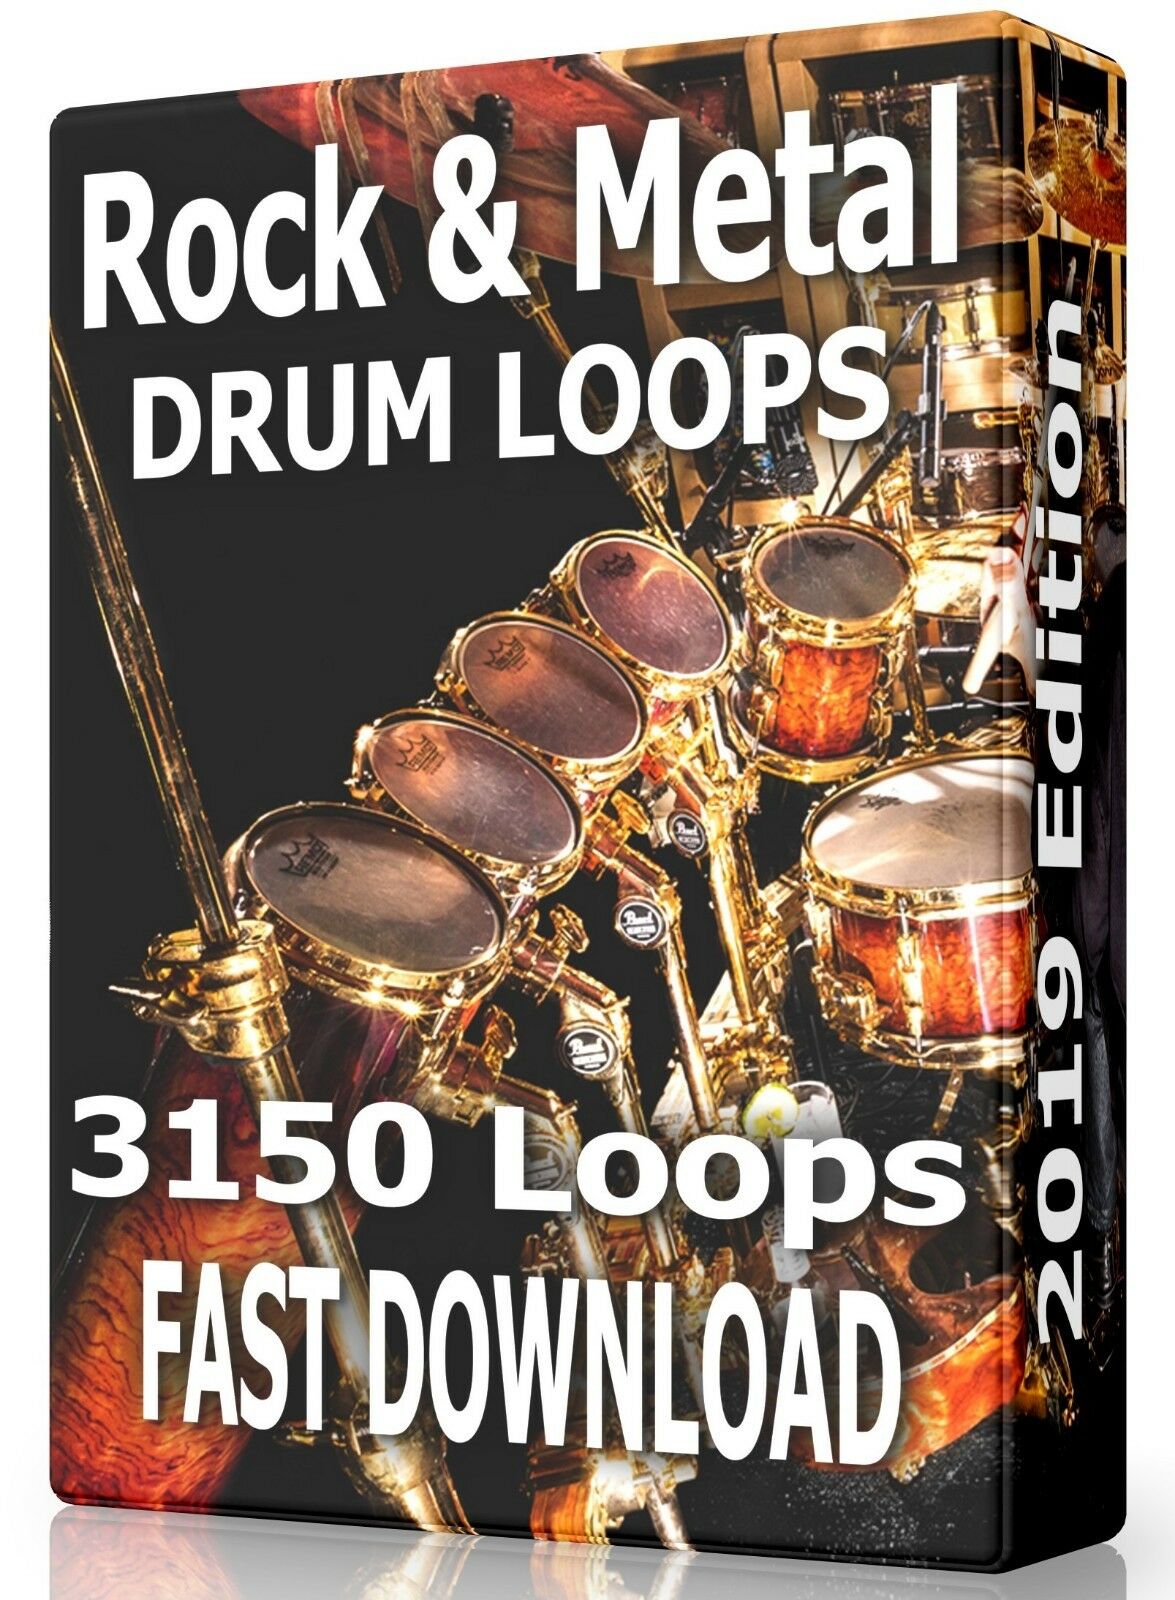 fl studio metal drum loops free download